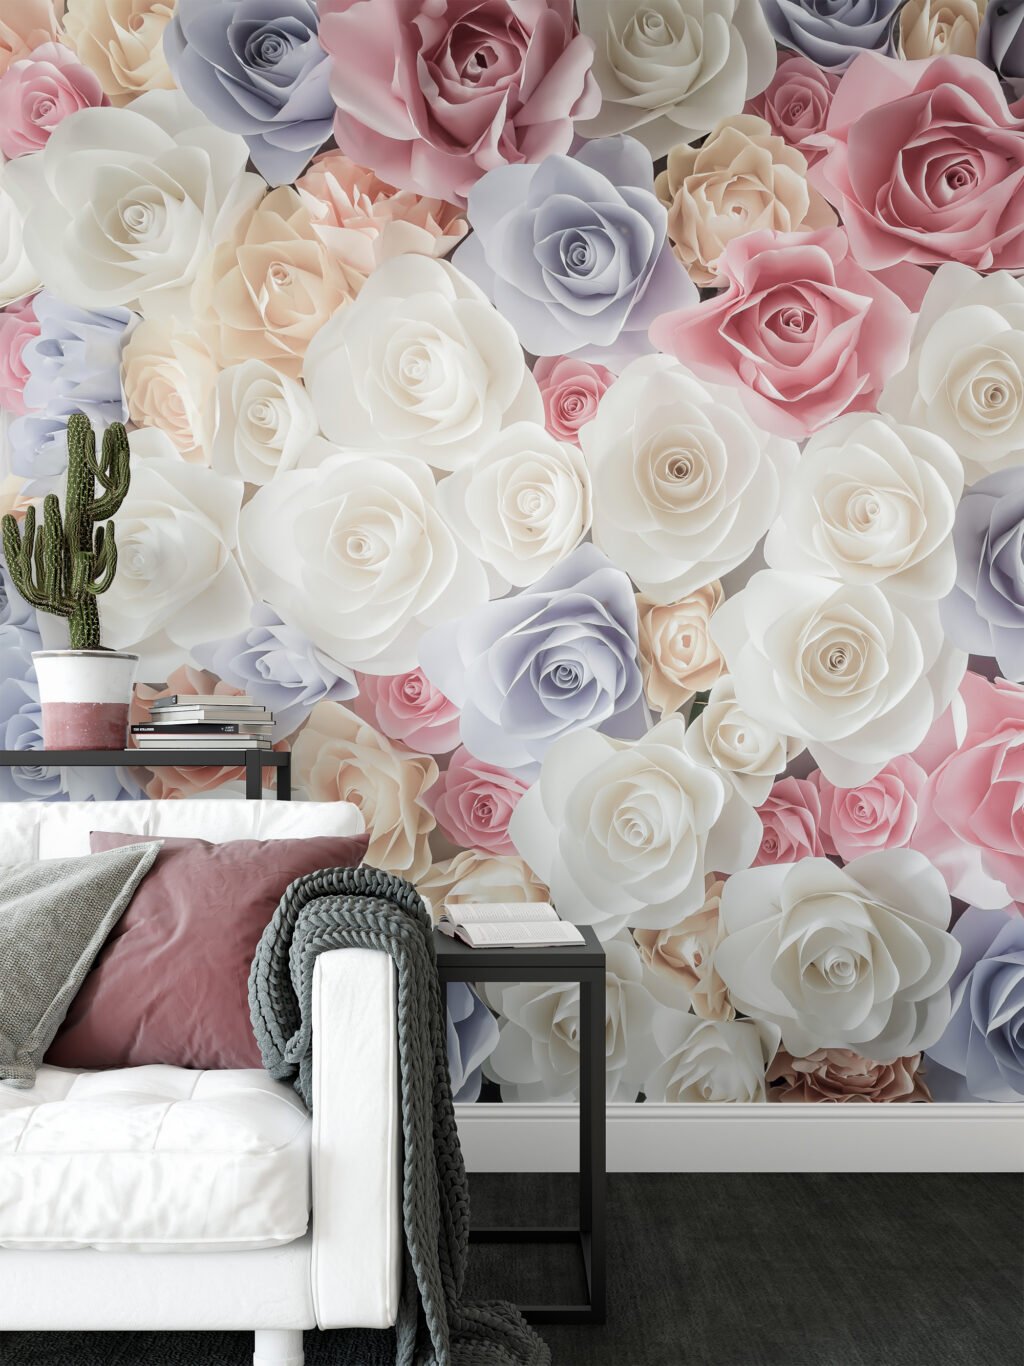 Pastel Mor ve Pembe Gül Desenli Duvar Kağıdı, Yatak Odası için Romantik Duvar Posteri Çiçekli Duvar Kağıtları 4